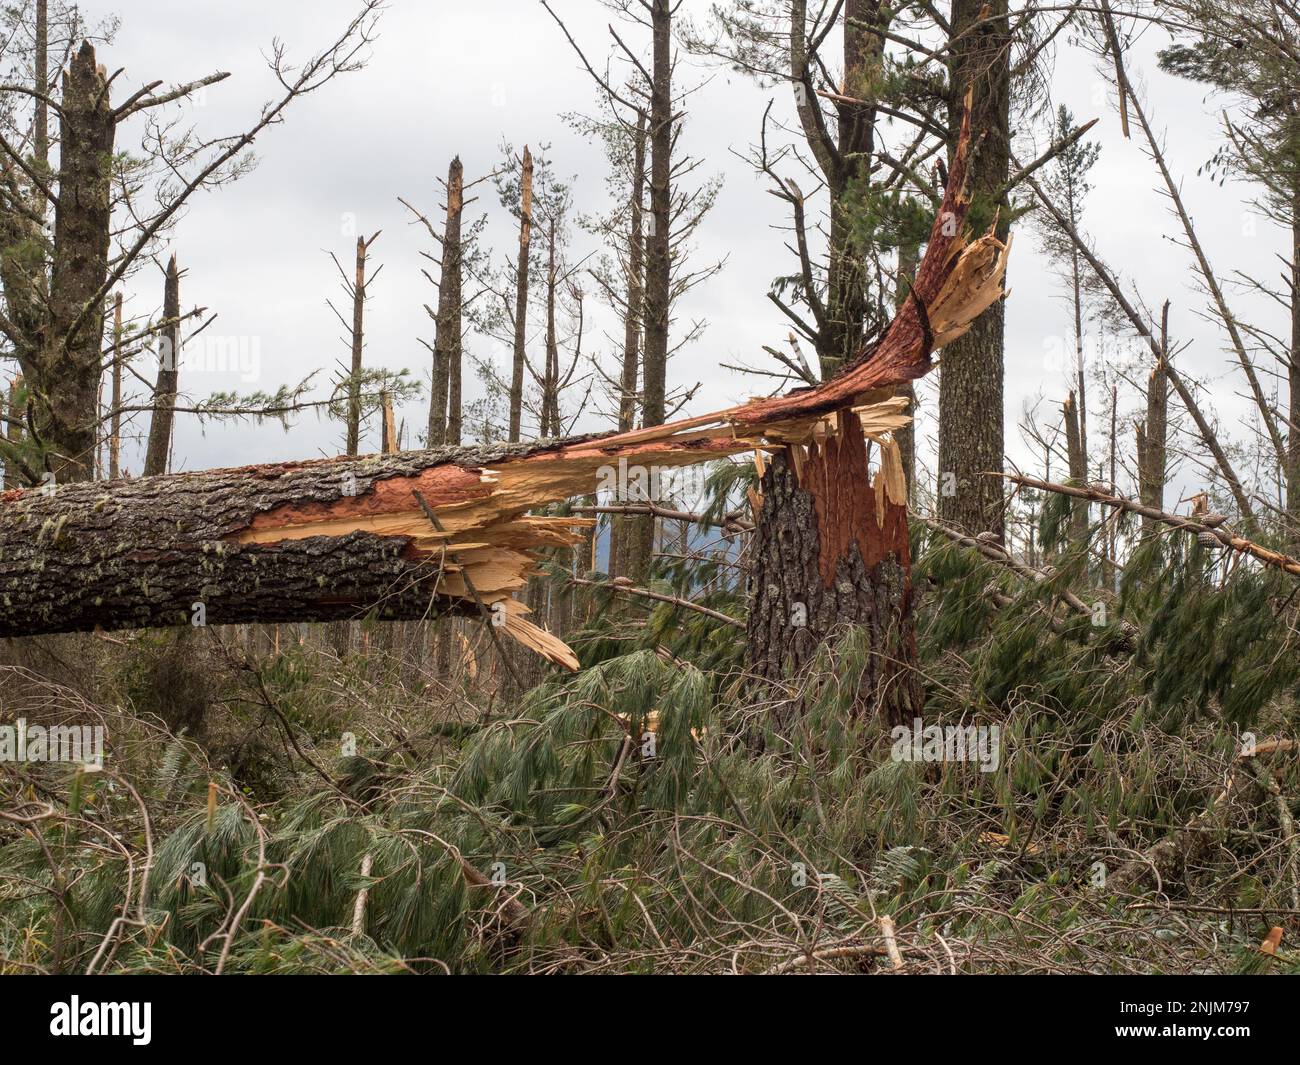 Une vue rapprochée d'un tronc de pin cassé dans une forêt après la tempête cyclone Gabrielle.presque chaque arbre a été cassé par de graves vents forts.Météo Banque D'Images